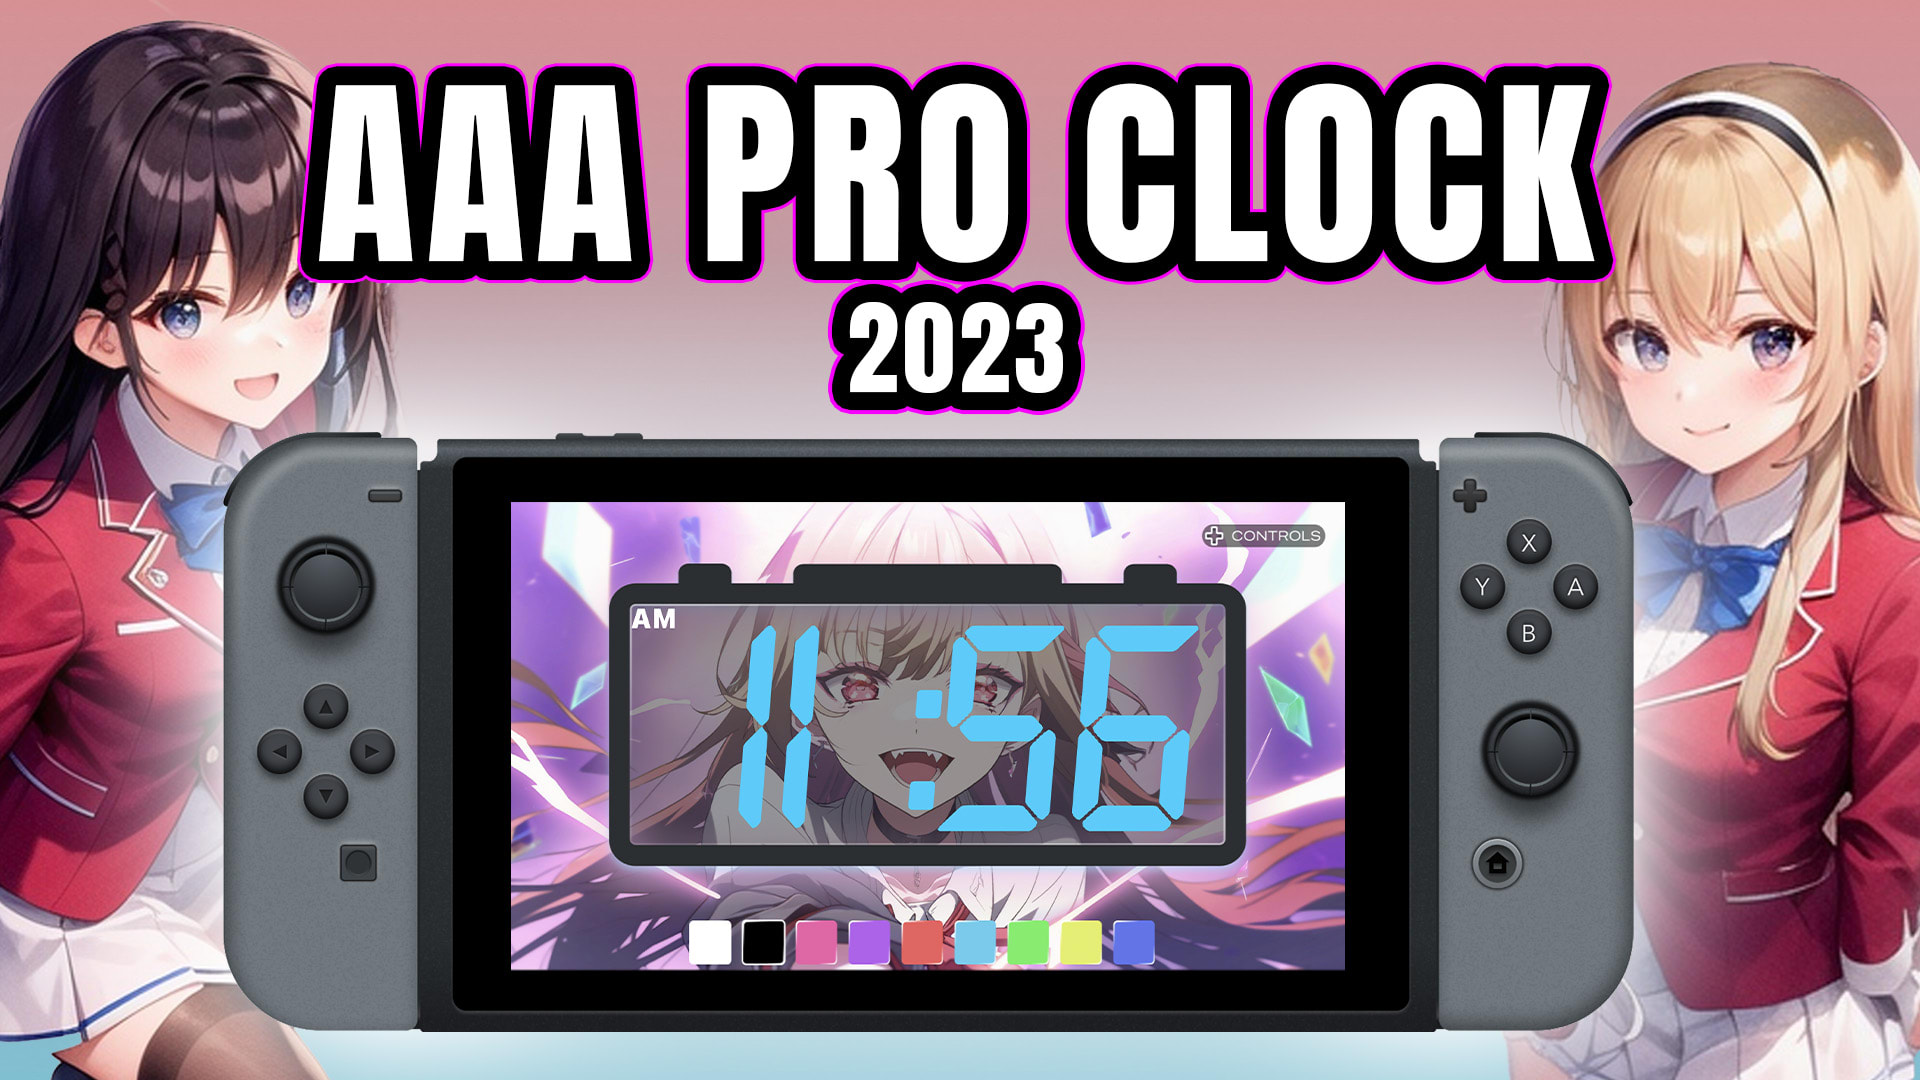 AAA PRO CLOCK 2023